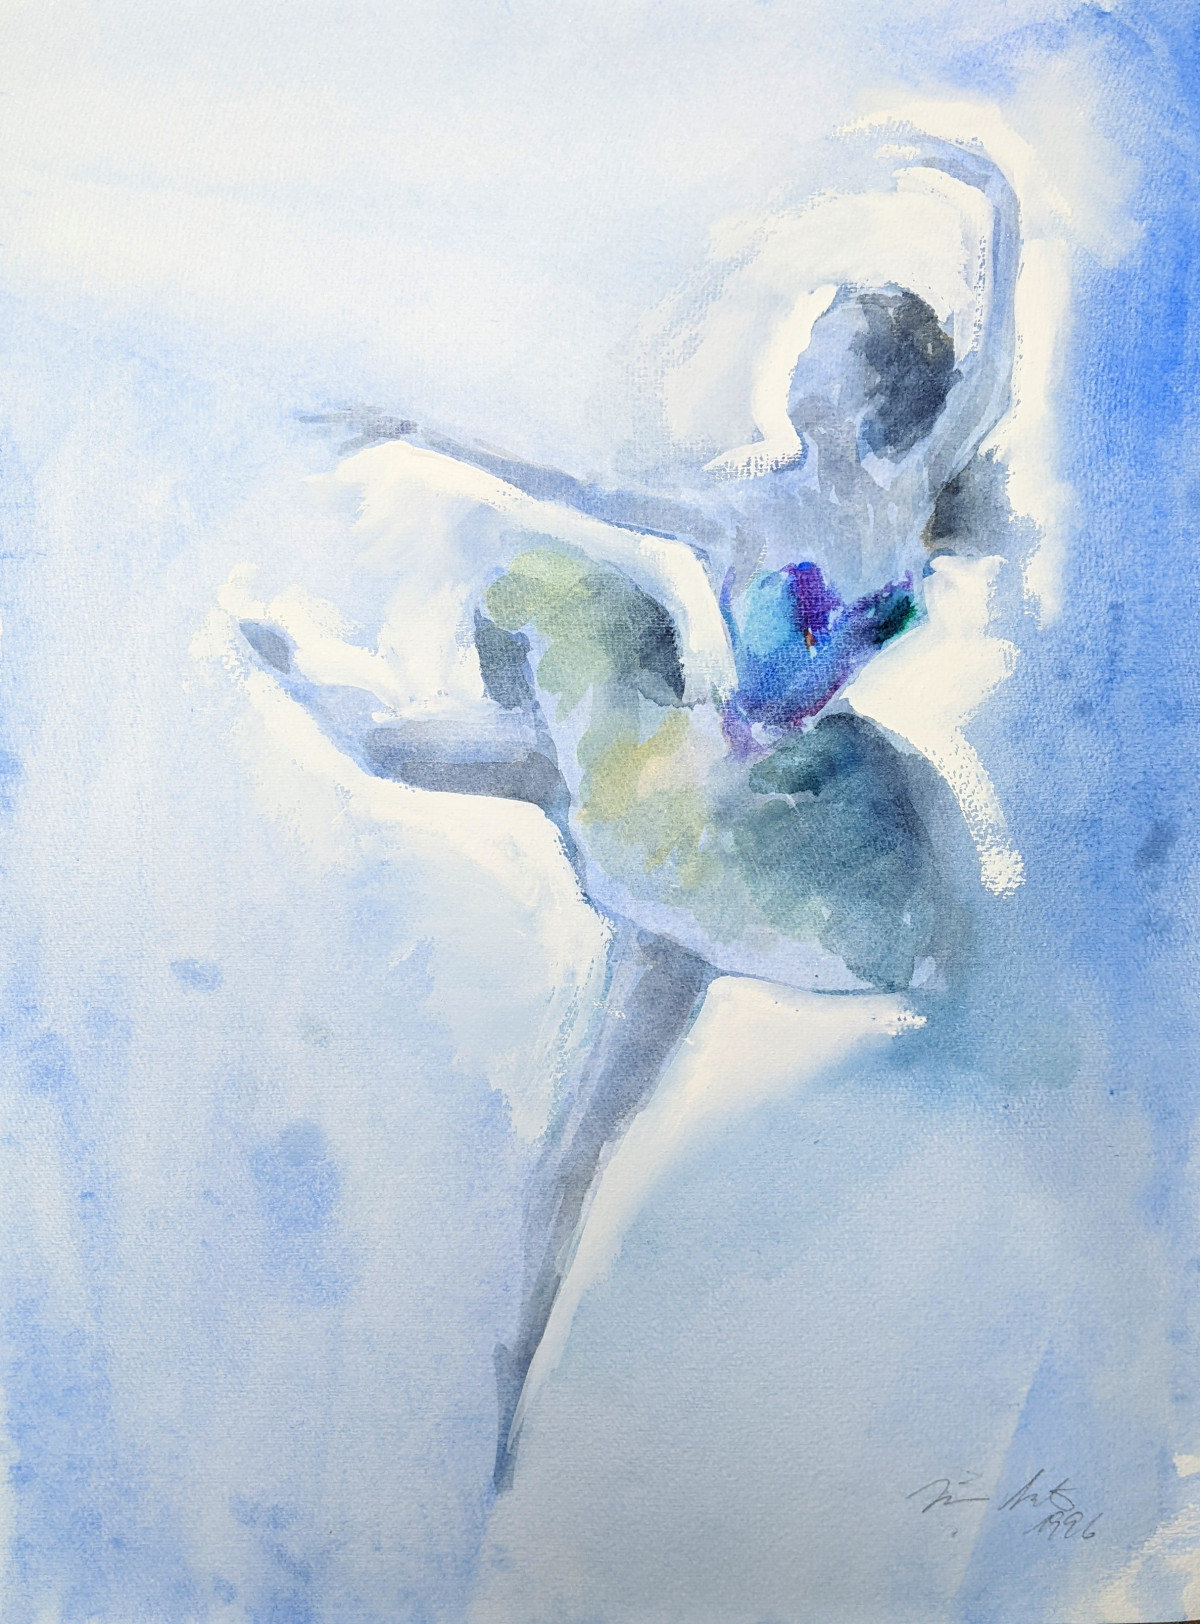 Tänzerin auf Blau, Attitudefigure, Aquarell, 1996